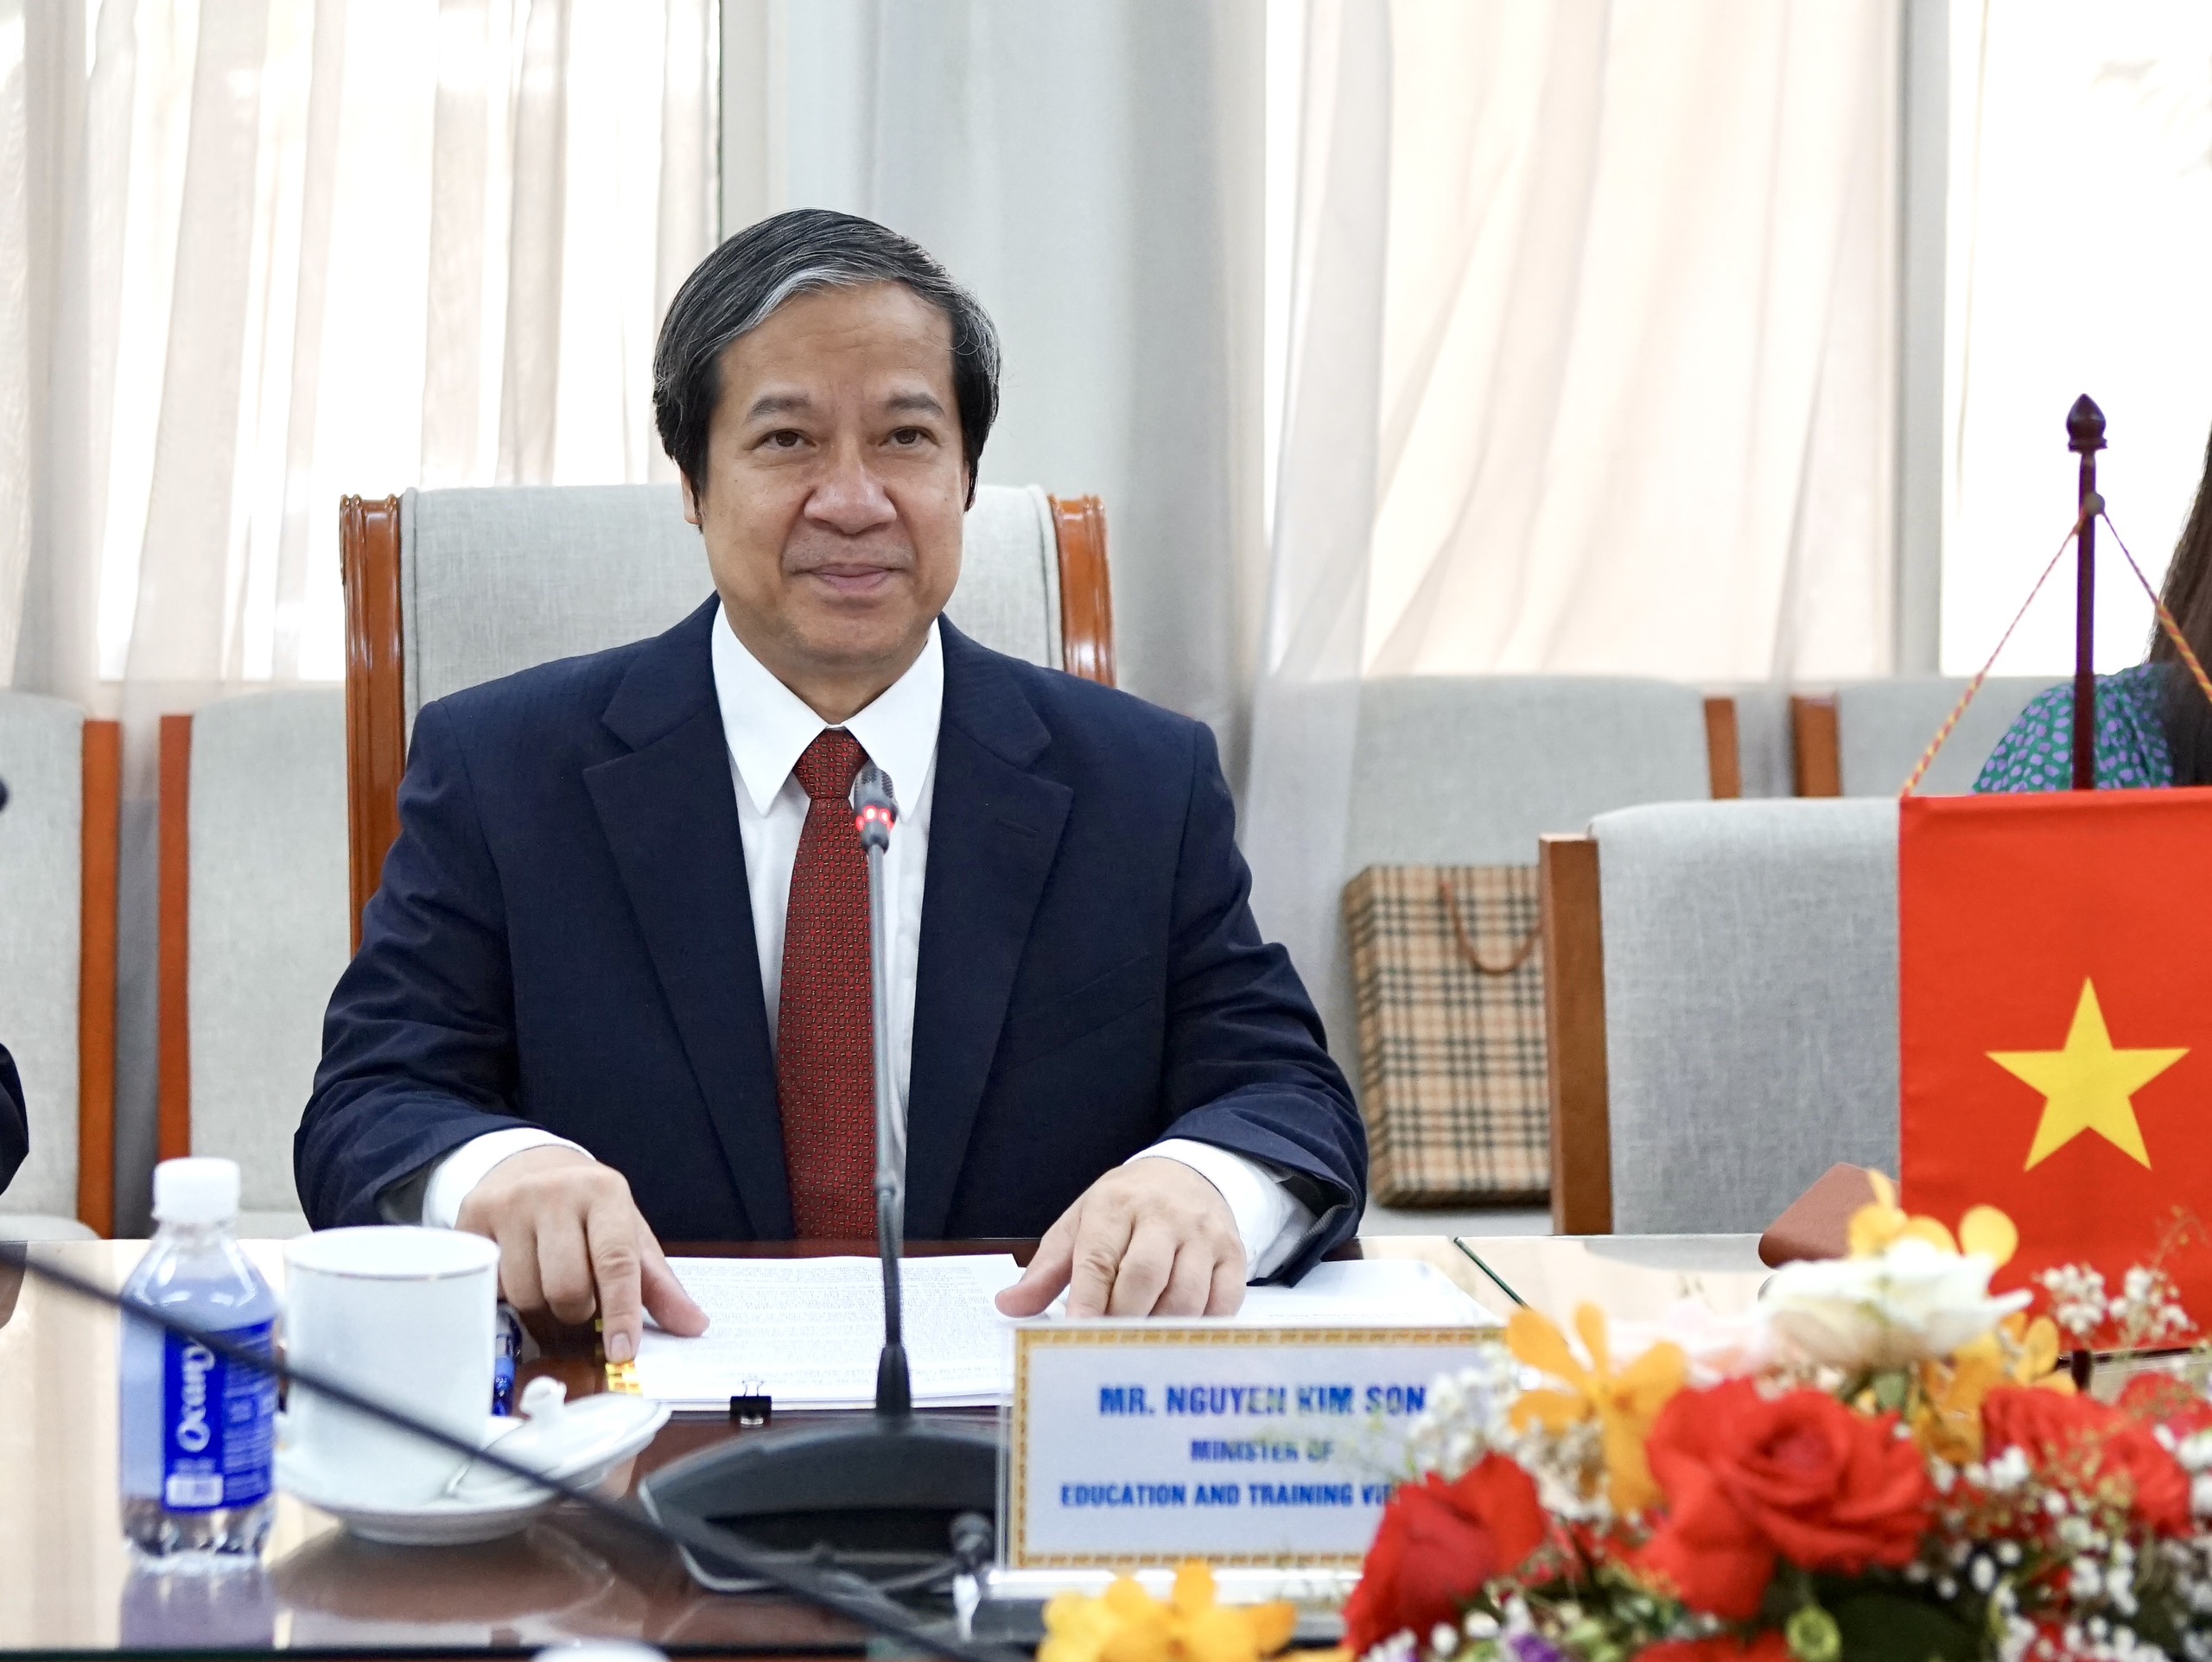 Bộ trưởng Nguyễn Kim Sơn phát biểu tại buổi tiếp.